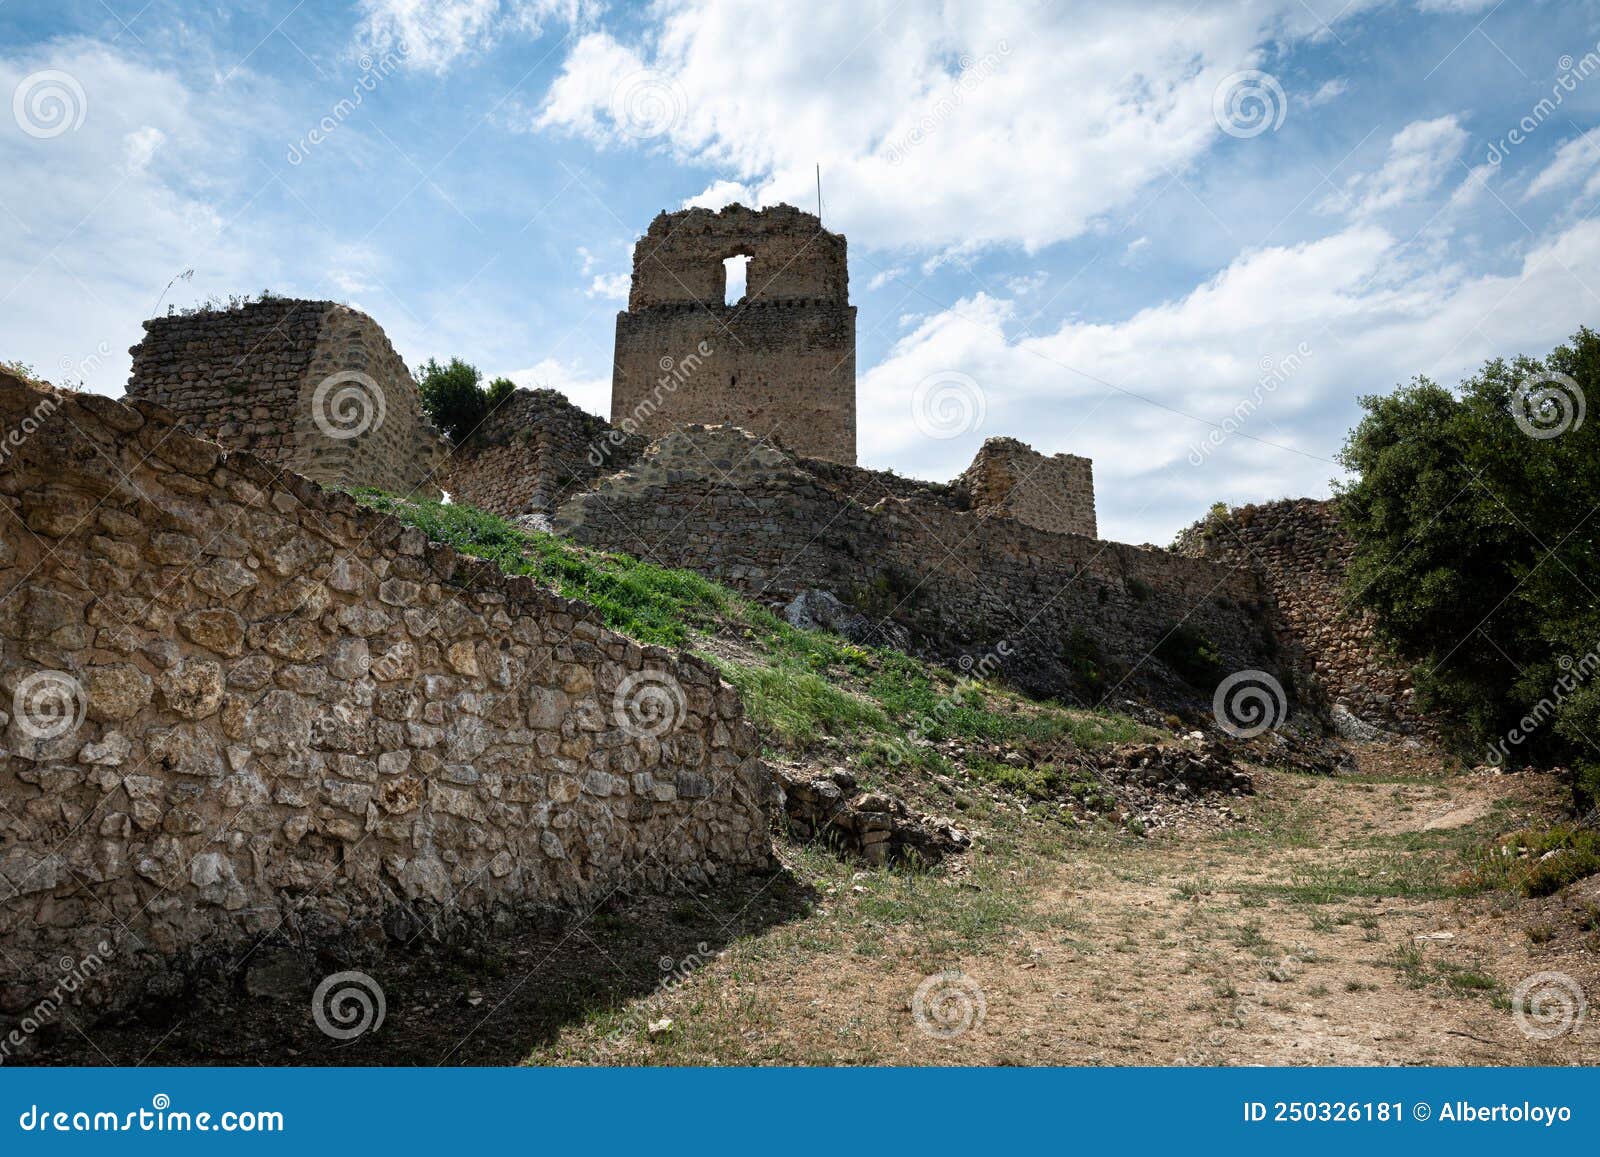 castle of lanos in ocio village, alava, spain